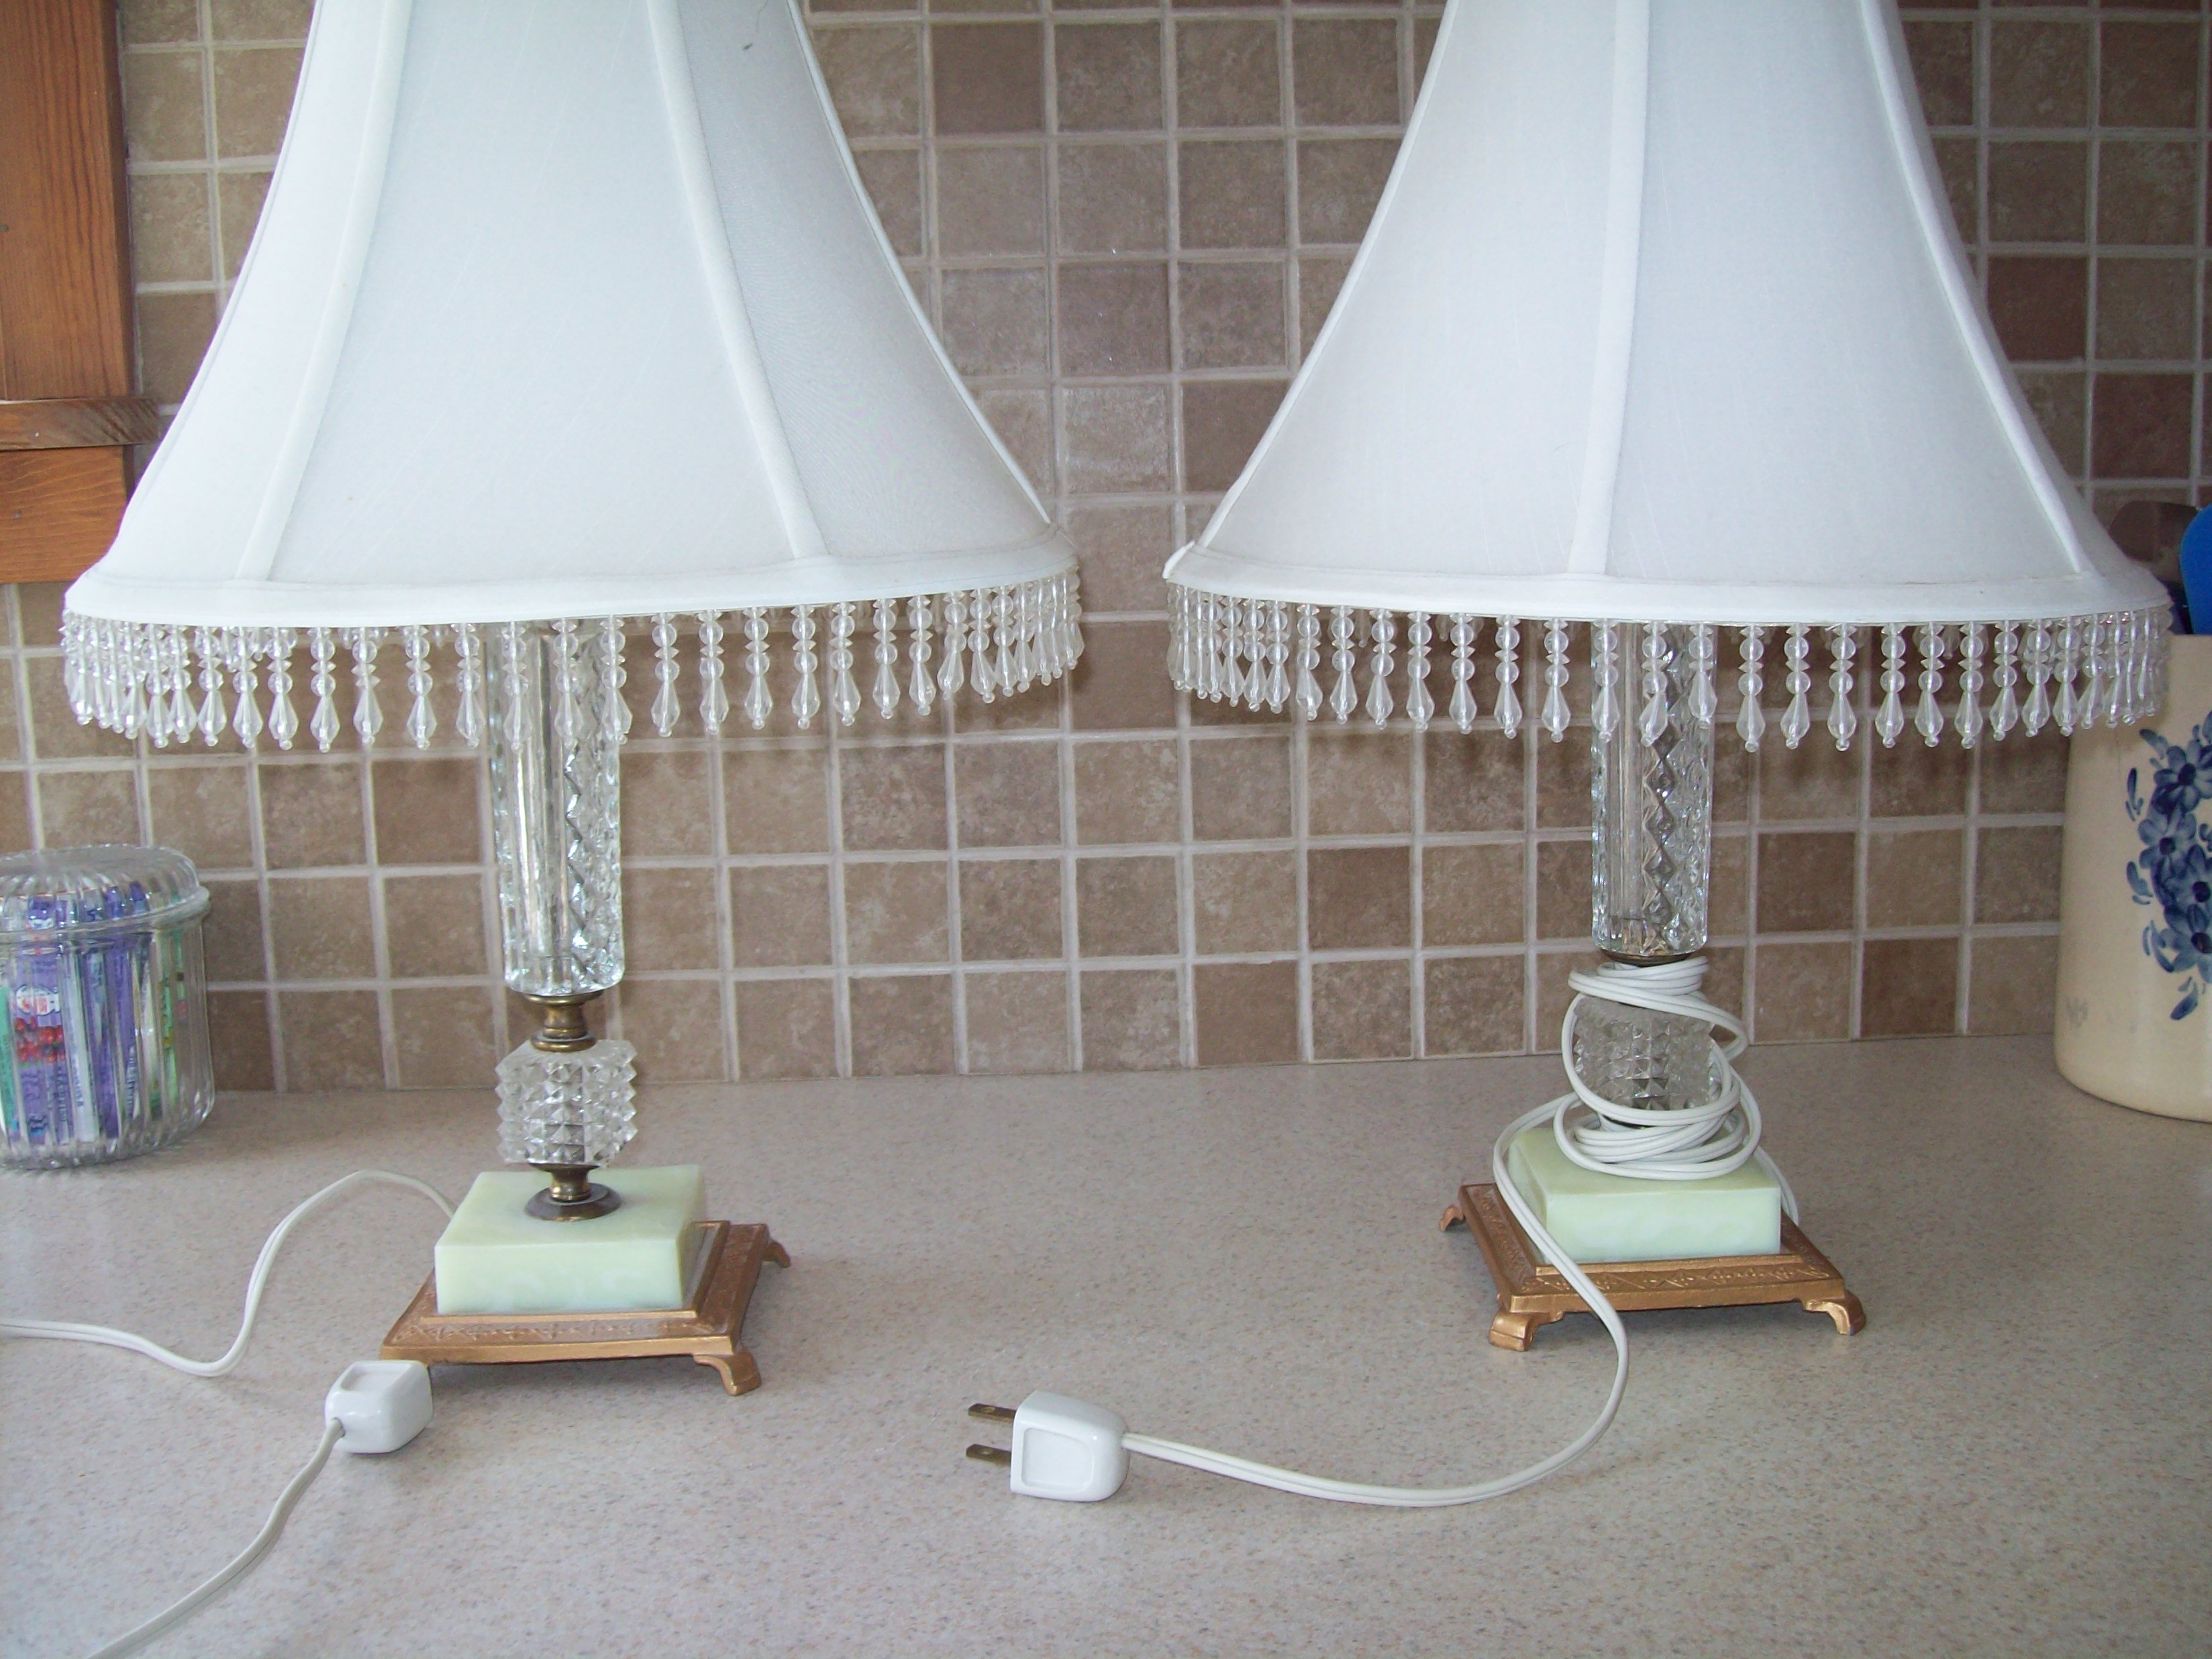 pair of lamps